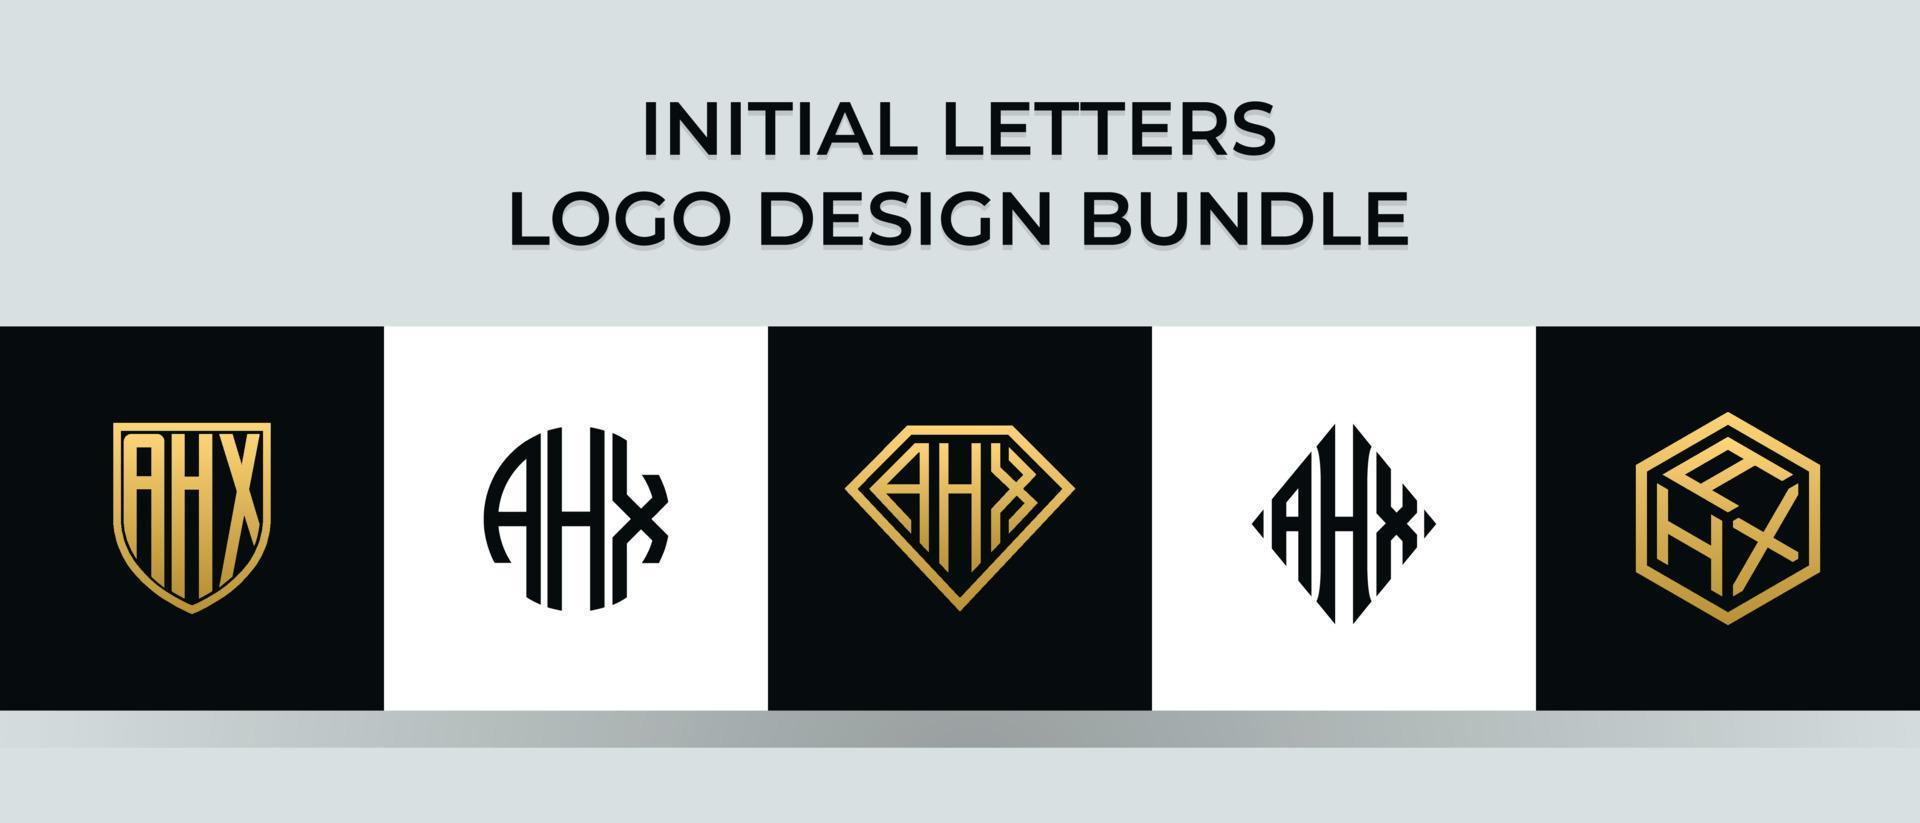 lettere iniziali ahx logo design bundle vettore